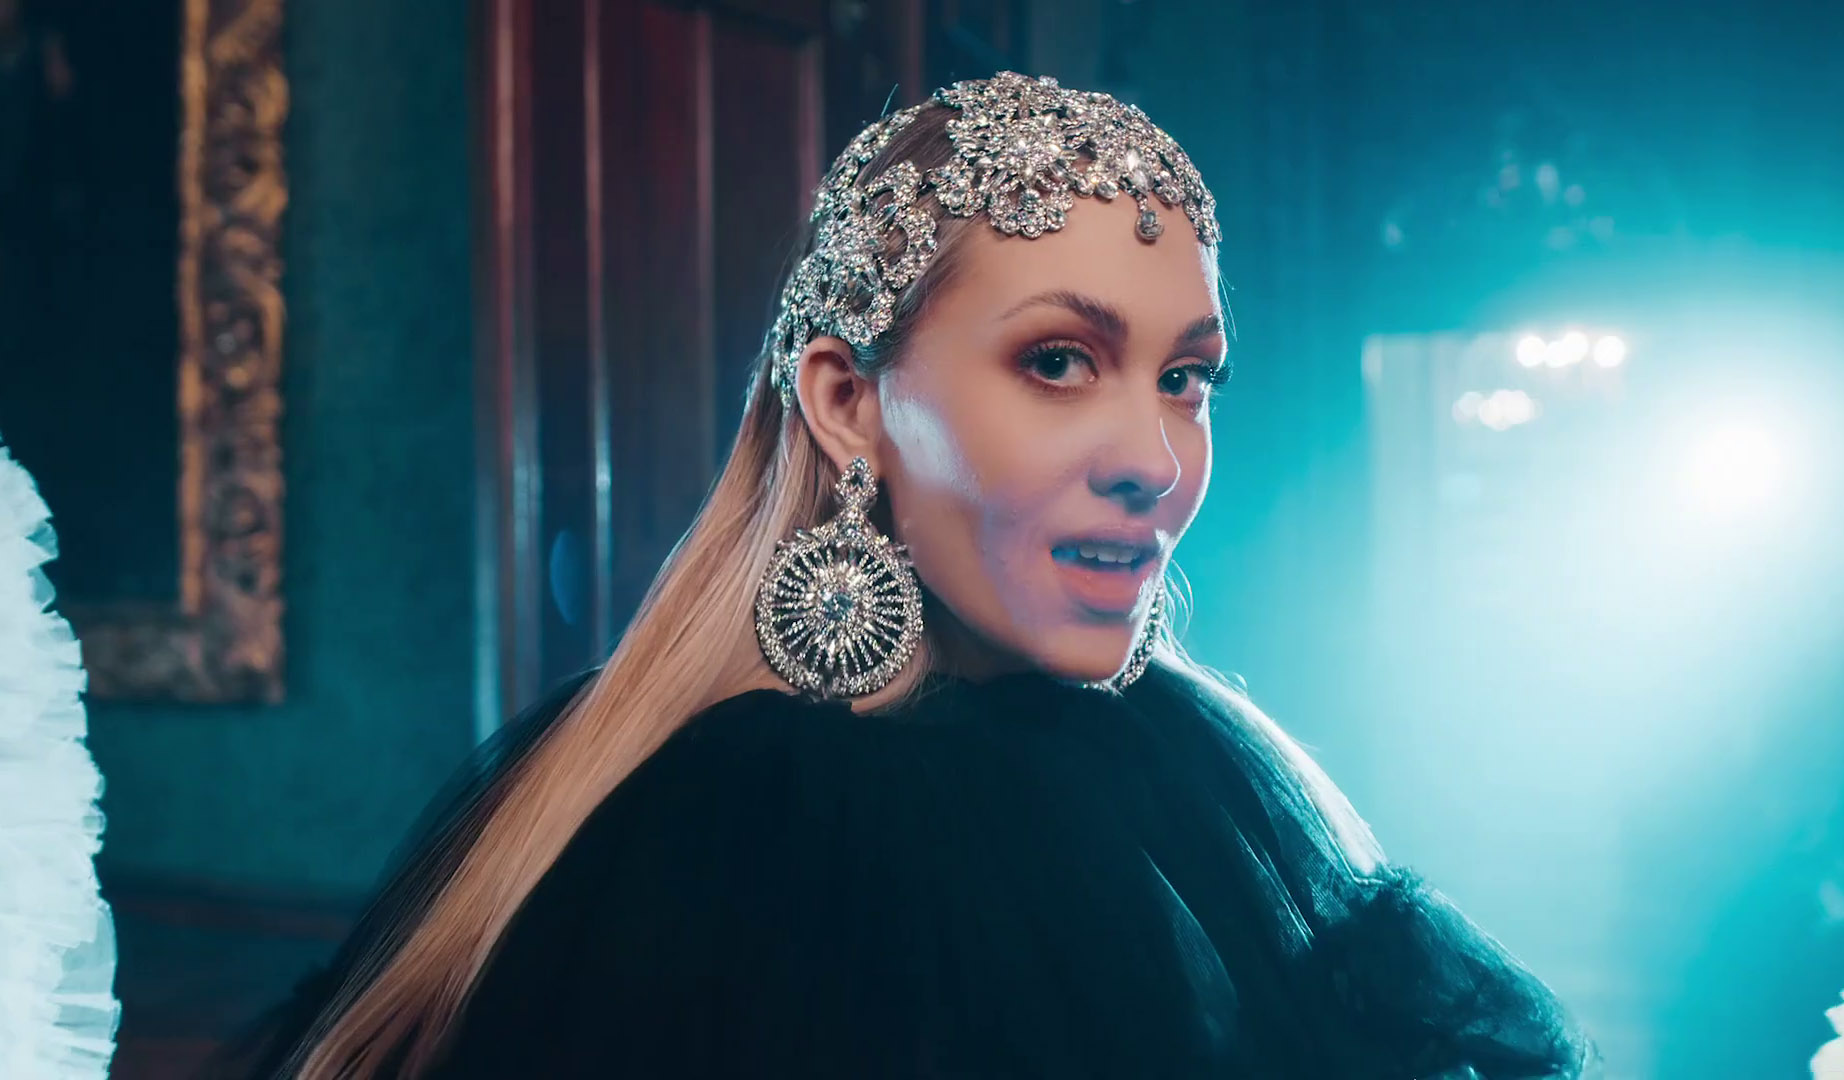 Albina presenta el videoclip oficial de “Tick-Tock”, el tema croata para Eurovisión 2021